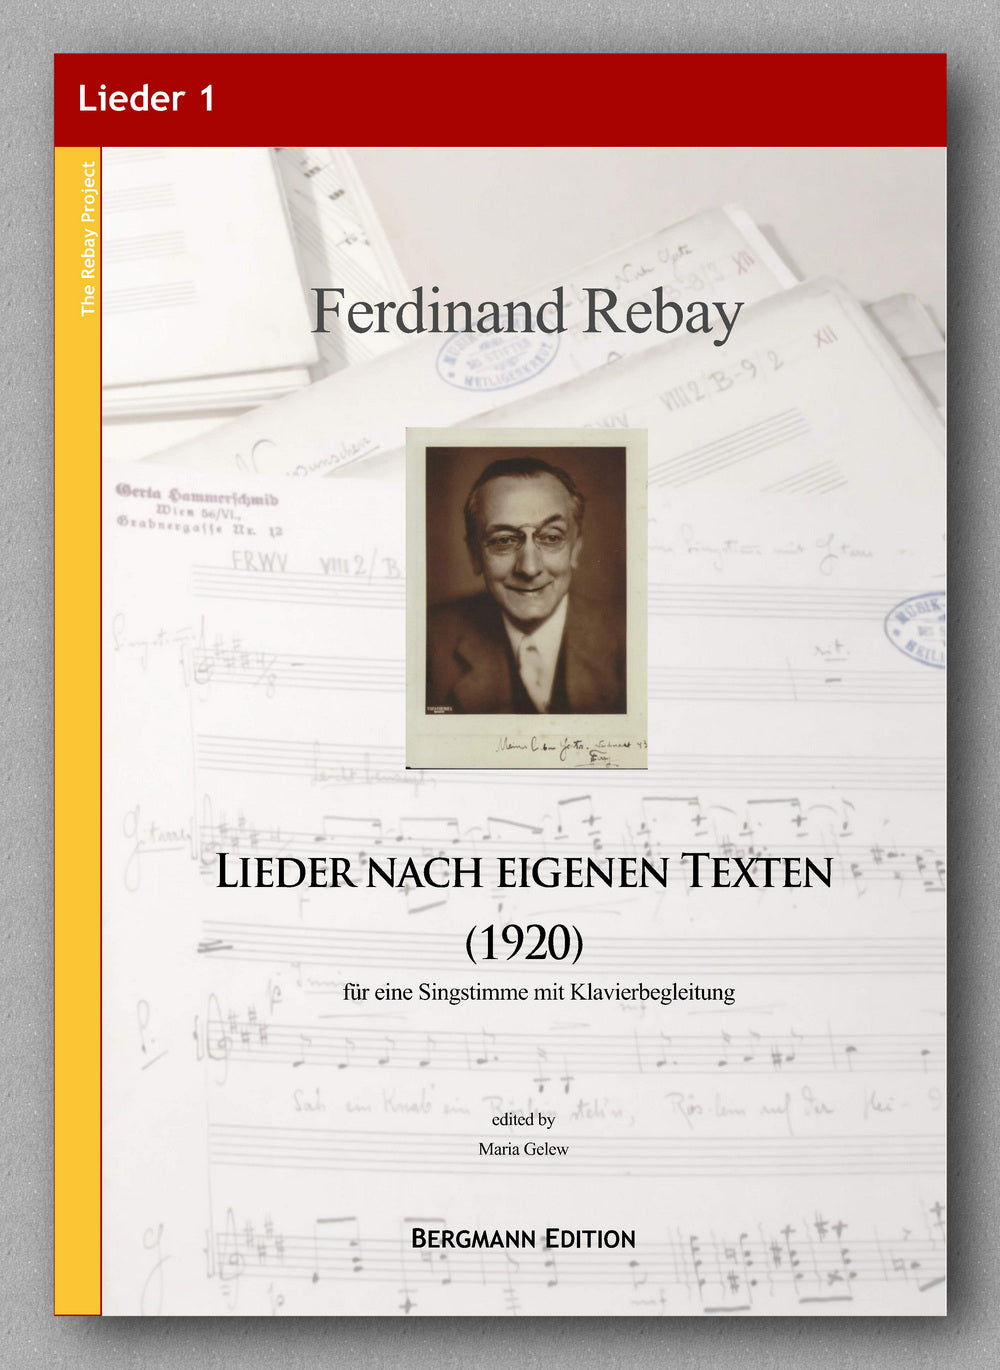 Ferdinand Rebay, Lieder nach eigenen Texten (1920) - preview of the cover